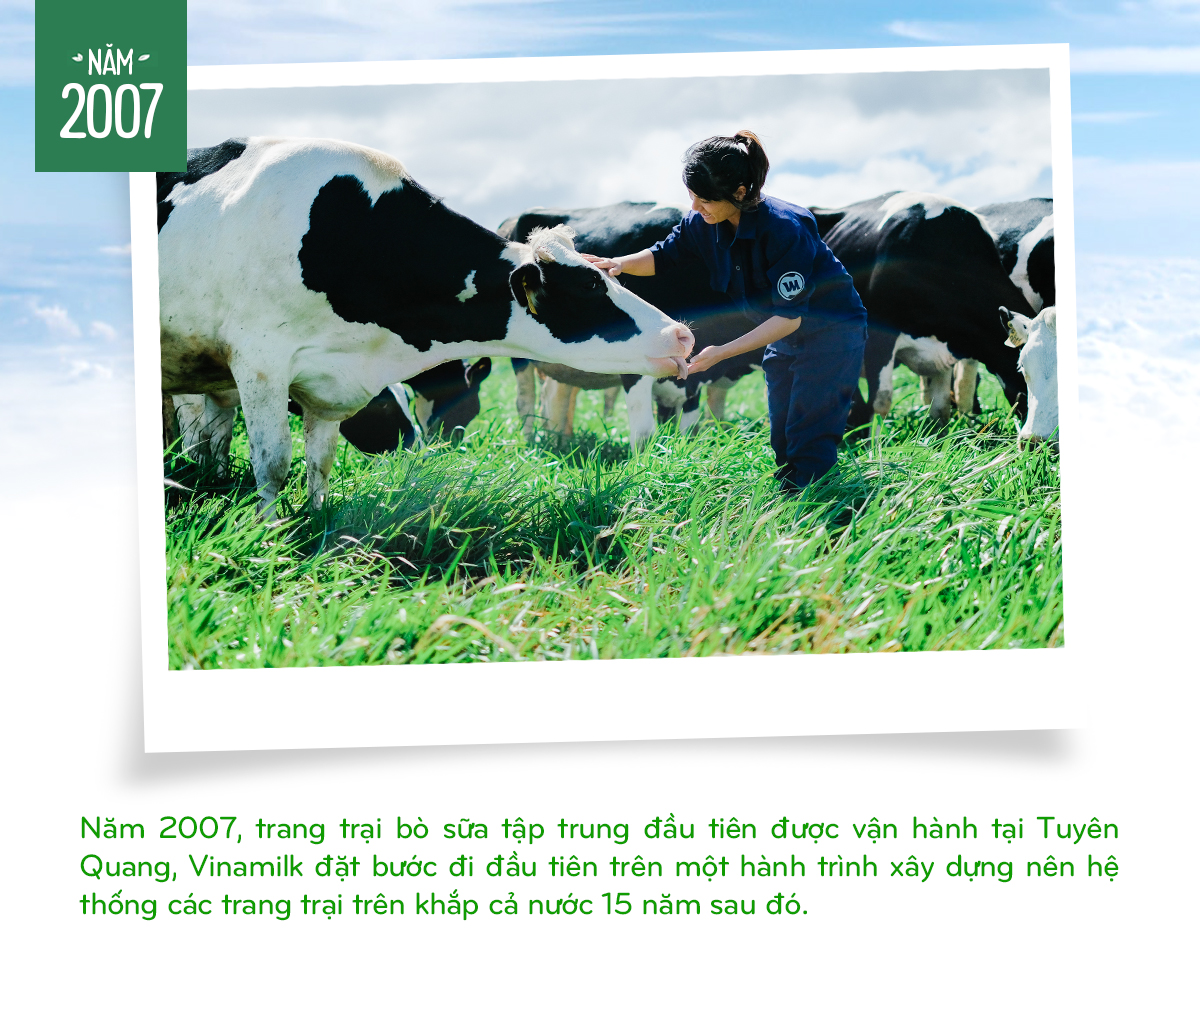 Vinamilk: 15 năm xây hệ thống trang trại bò sữa với “bộ sưu tập” tiêu chuẩn quốc tế - Ảnh 2